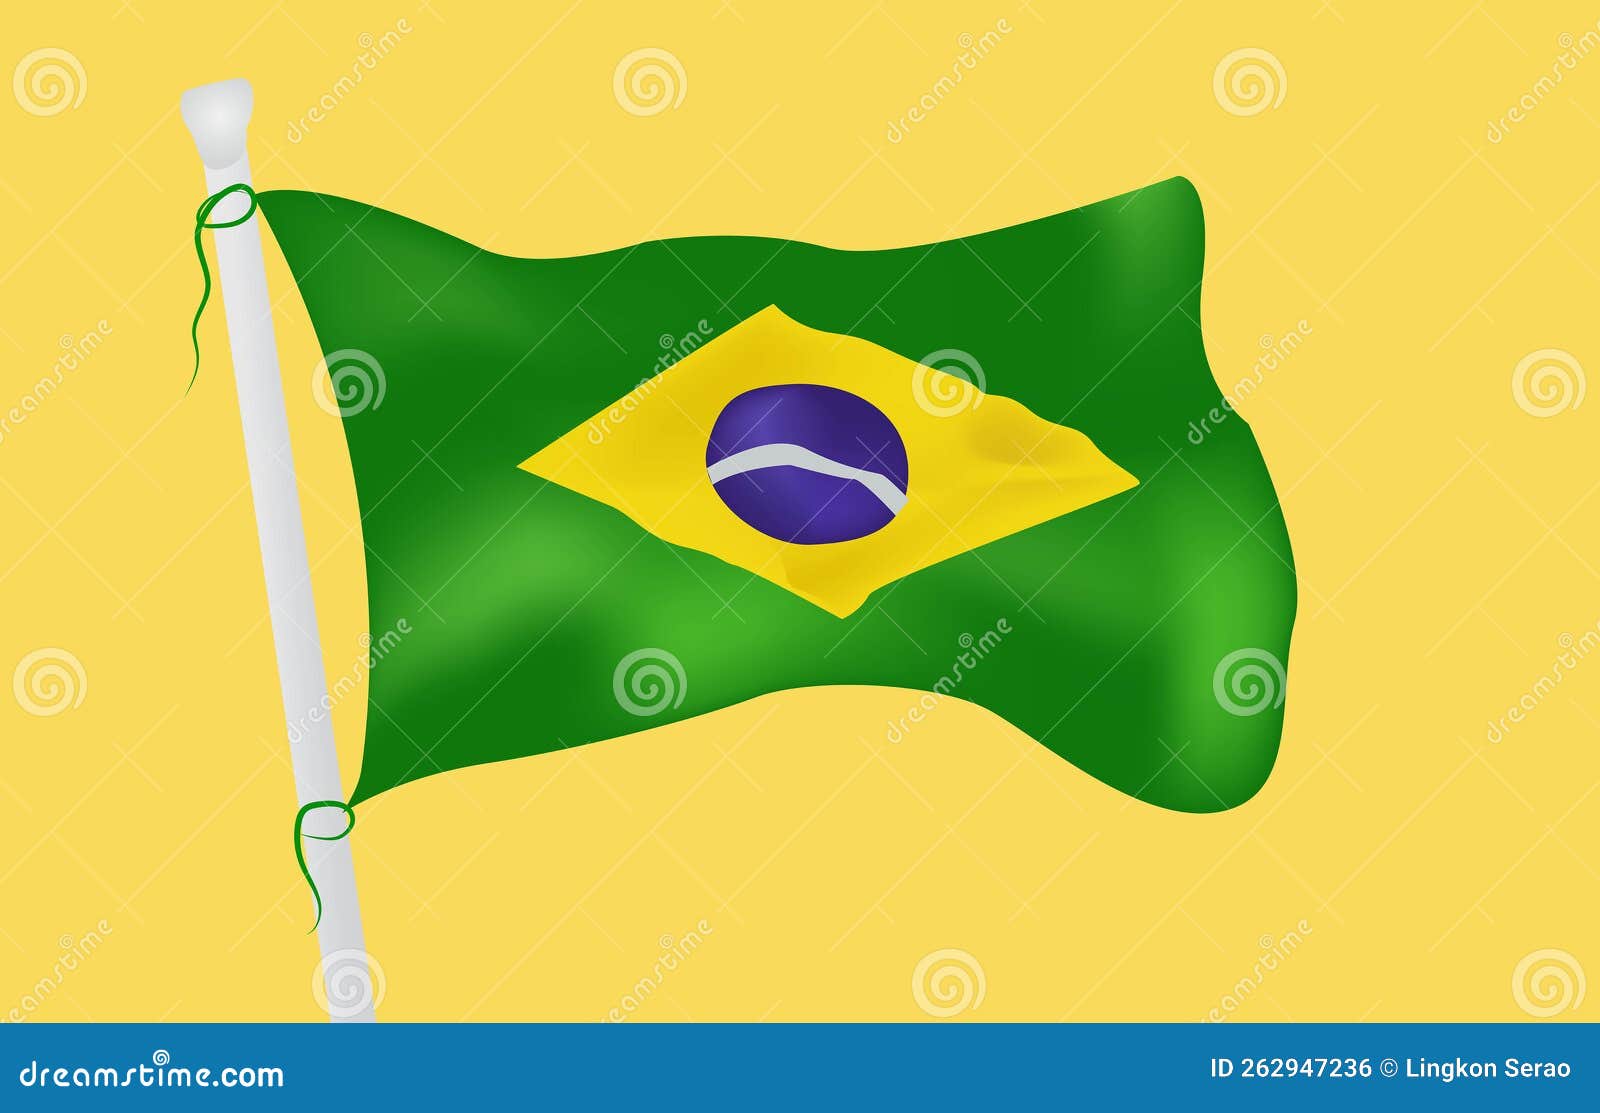 https://thumbs.dreamstime.com/z/flying-flag-brazil-world-champion-football-team-brasil-national-flag-brazil-country-flying-flag-brazil-world-262947236.jpg